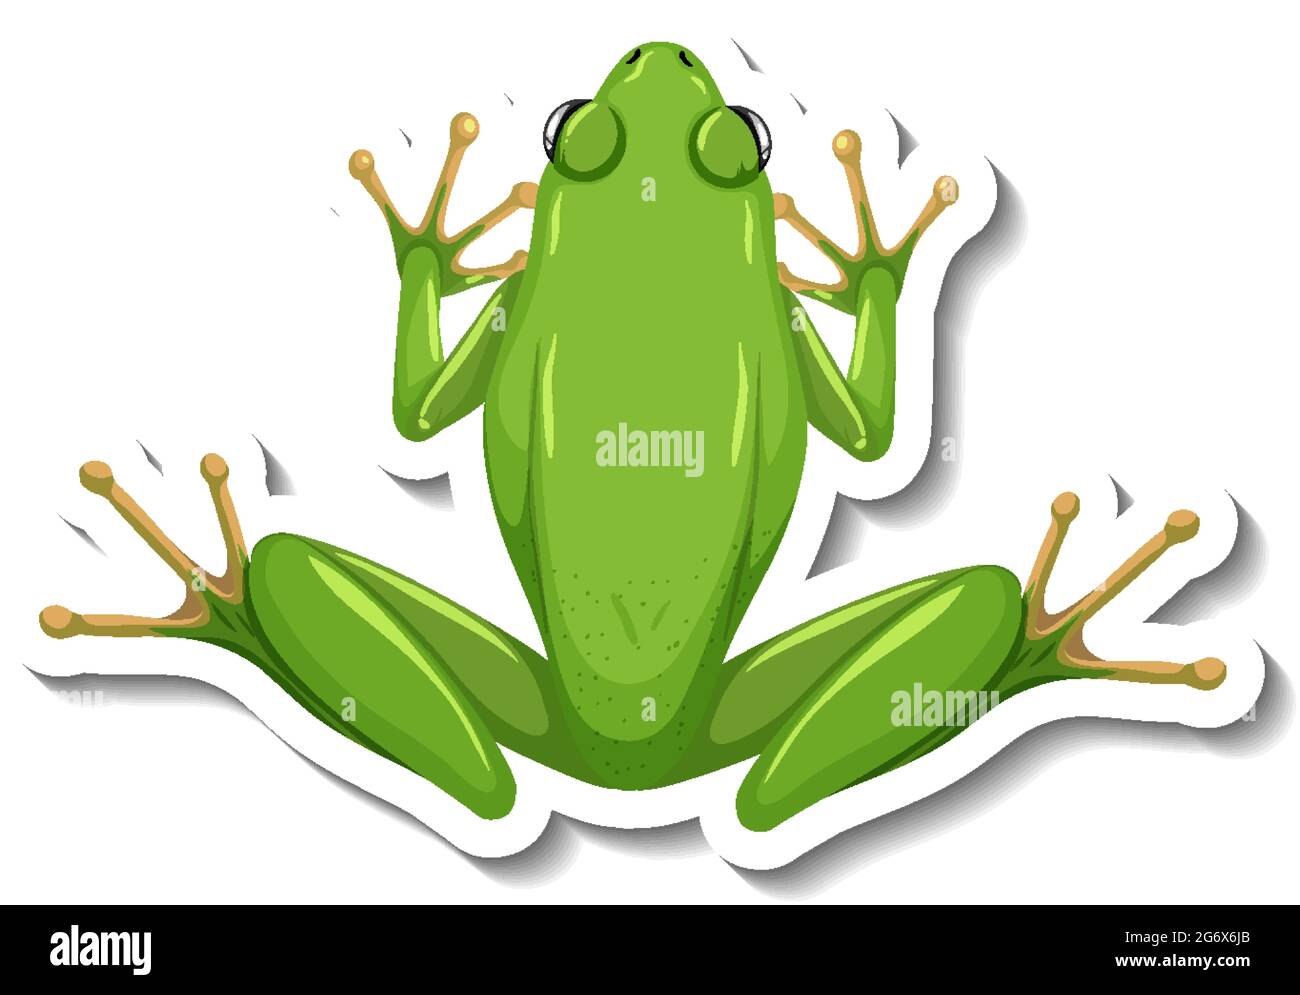 Eine Aufkleber-Vorlage mit Draufsicht auf grüne Frosch isoliert  Illustration Stock-Vektorgrafik - Alamy